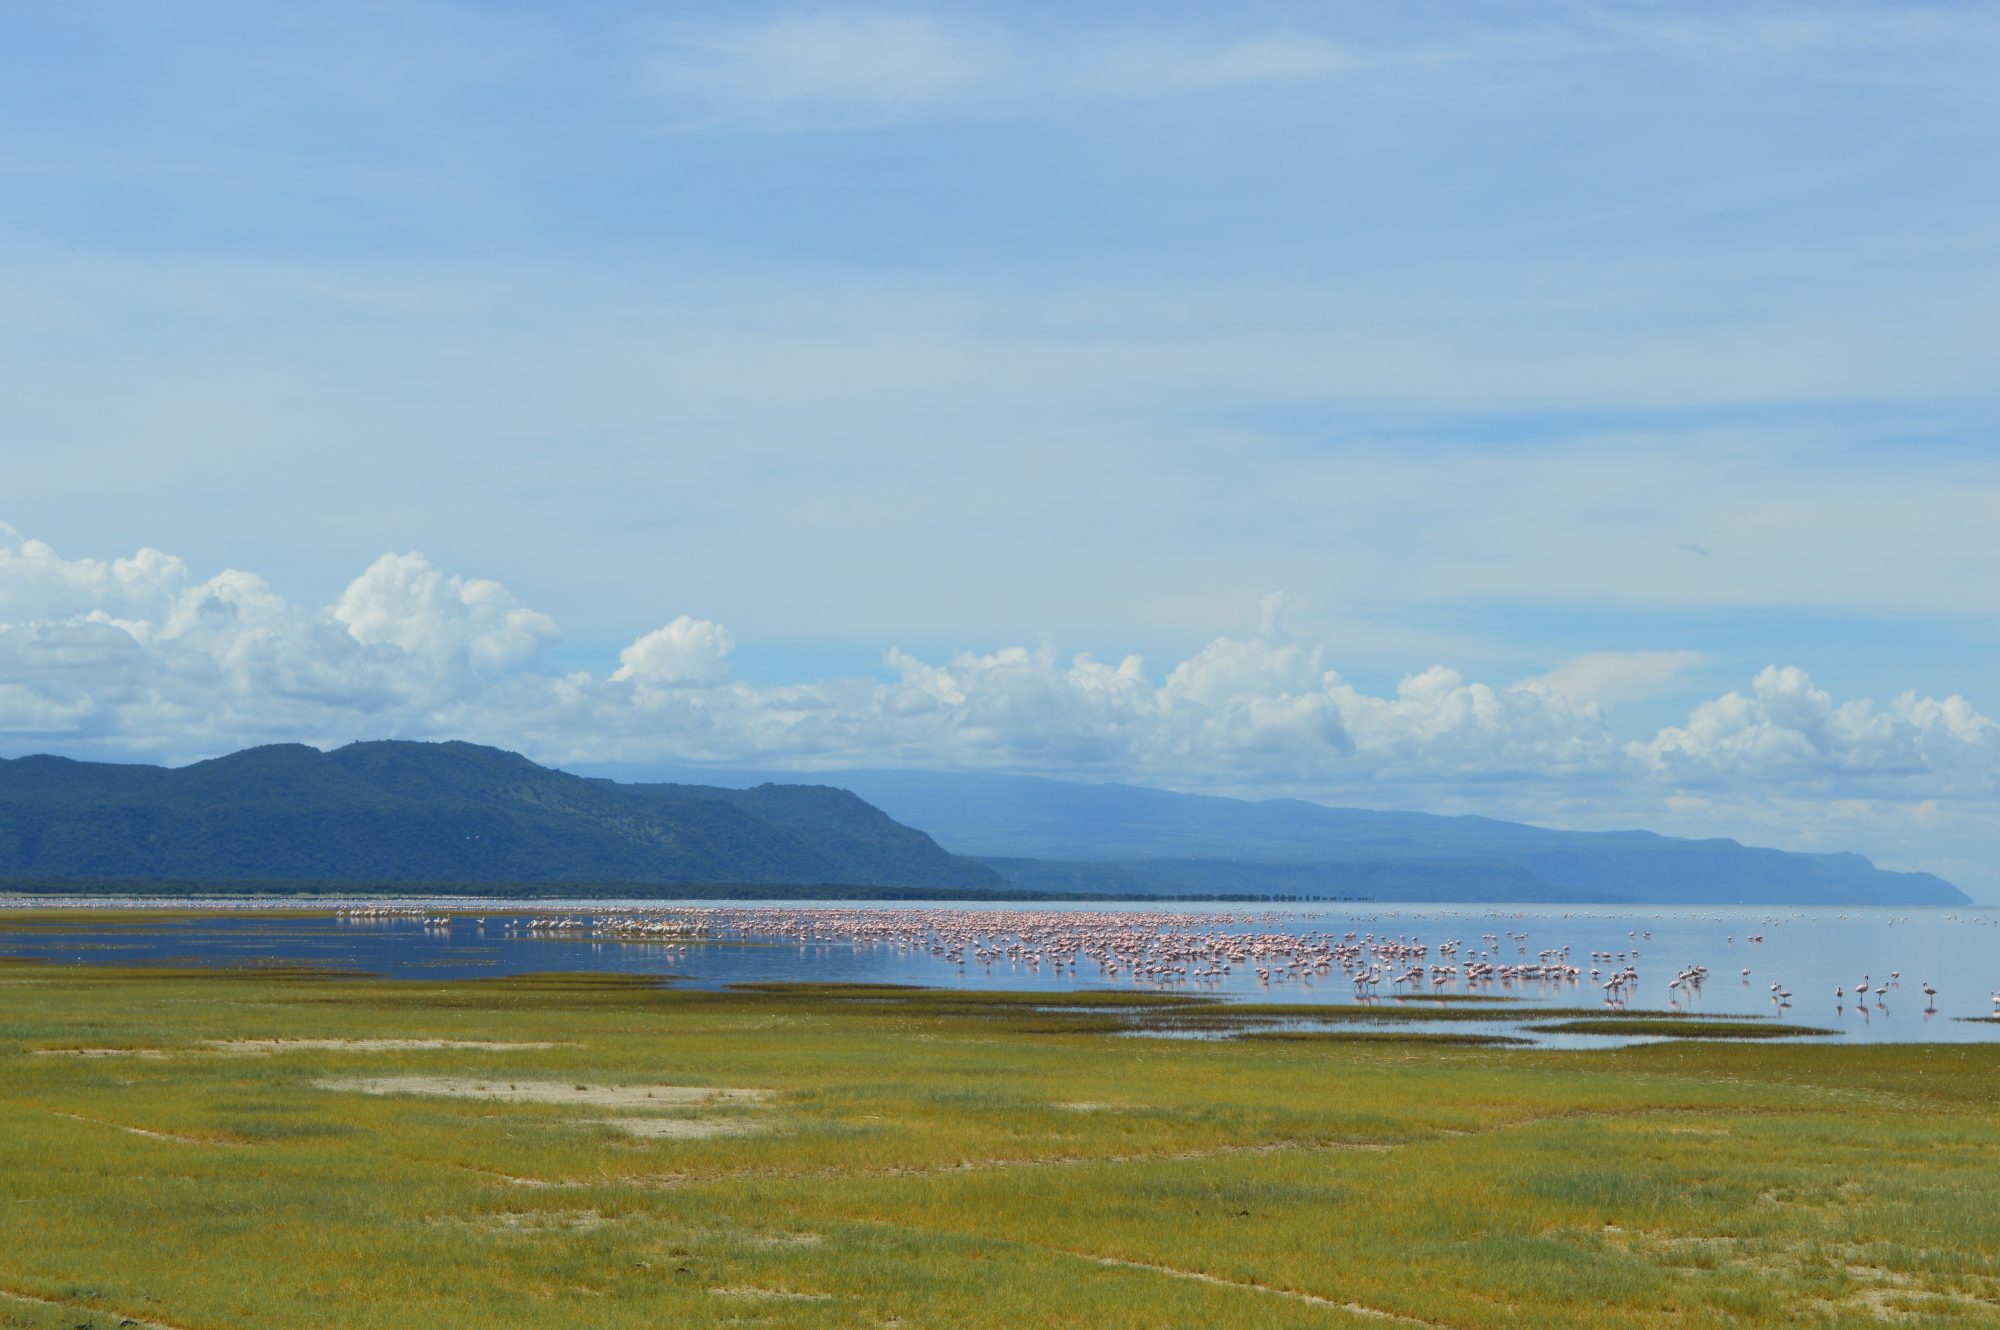 Flamingos on Lake Manyara